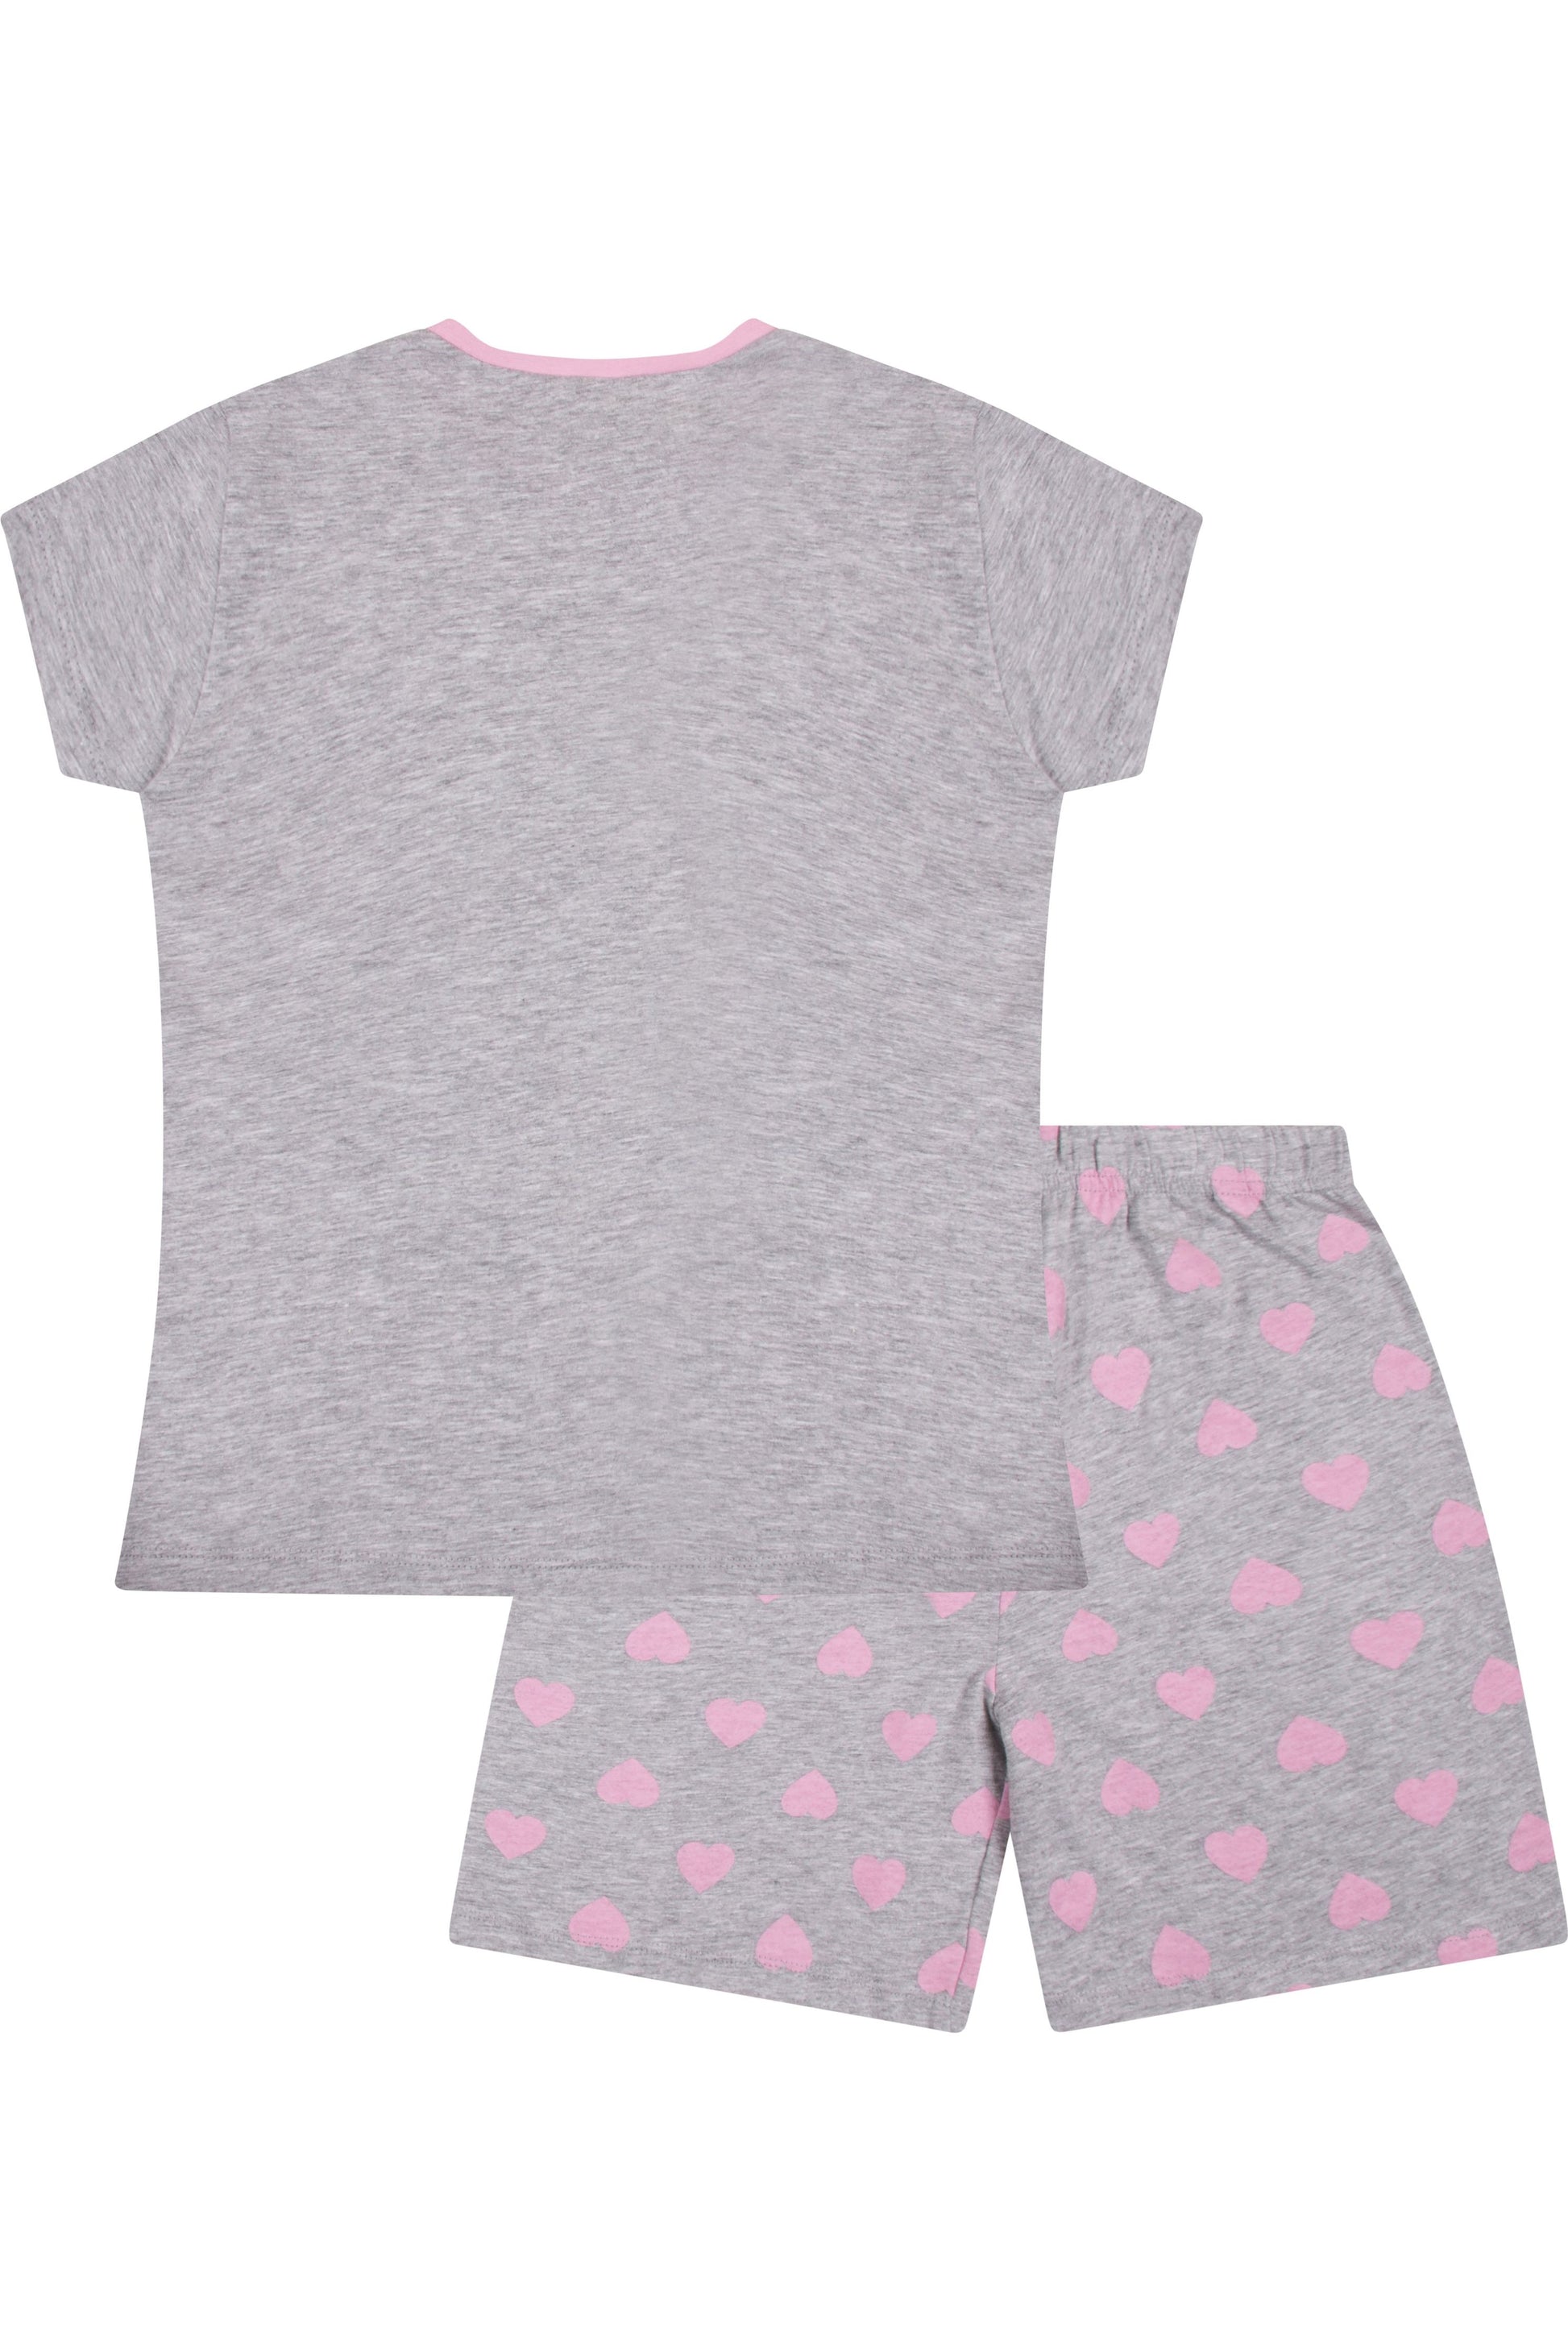 Girls Unicorn Short Pyjamas - Pyjamas.com